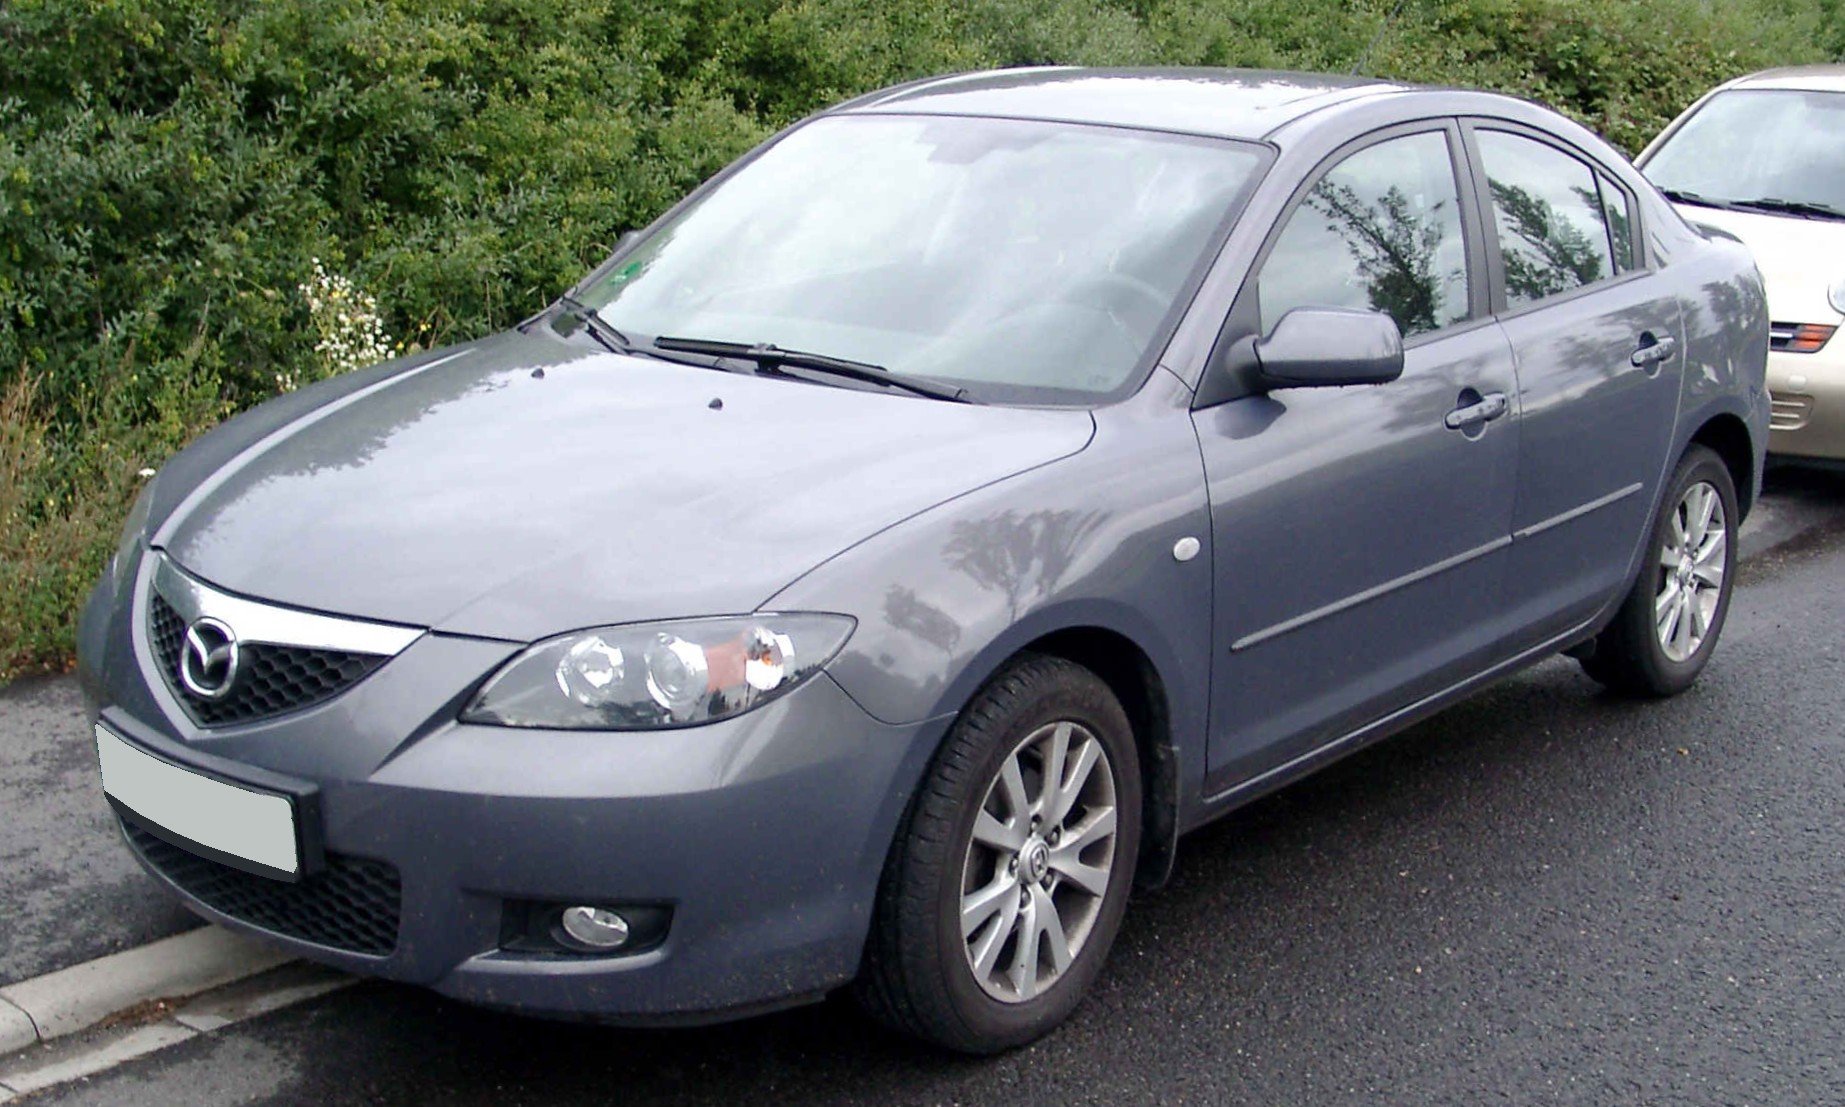 Мазда 3 вк 1.6. Мазда 3 БК седан. Mazda 3 BK 2006. Мазда 3 2006 BK седан. Mazda 3 BK 1.6.